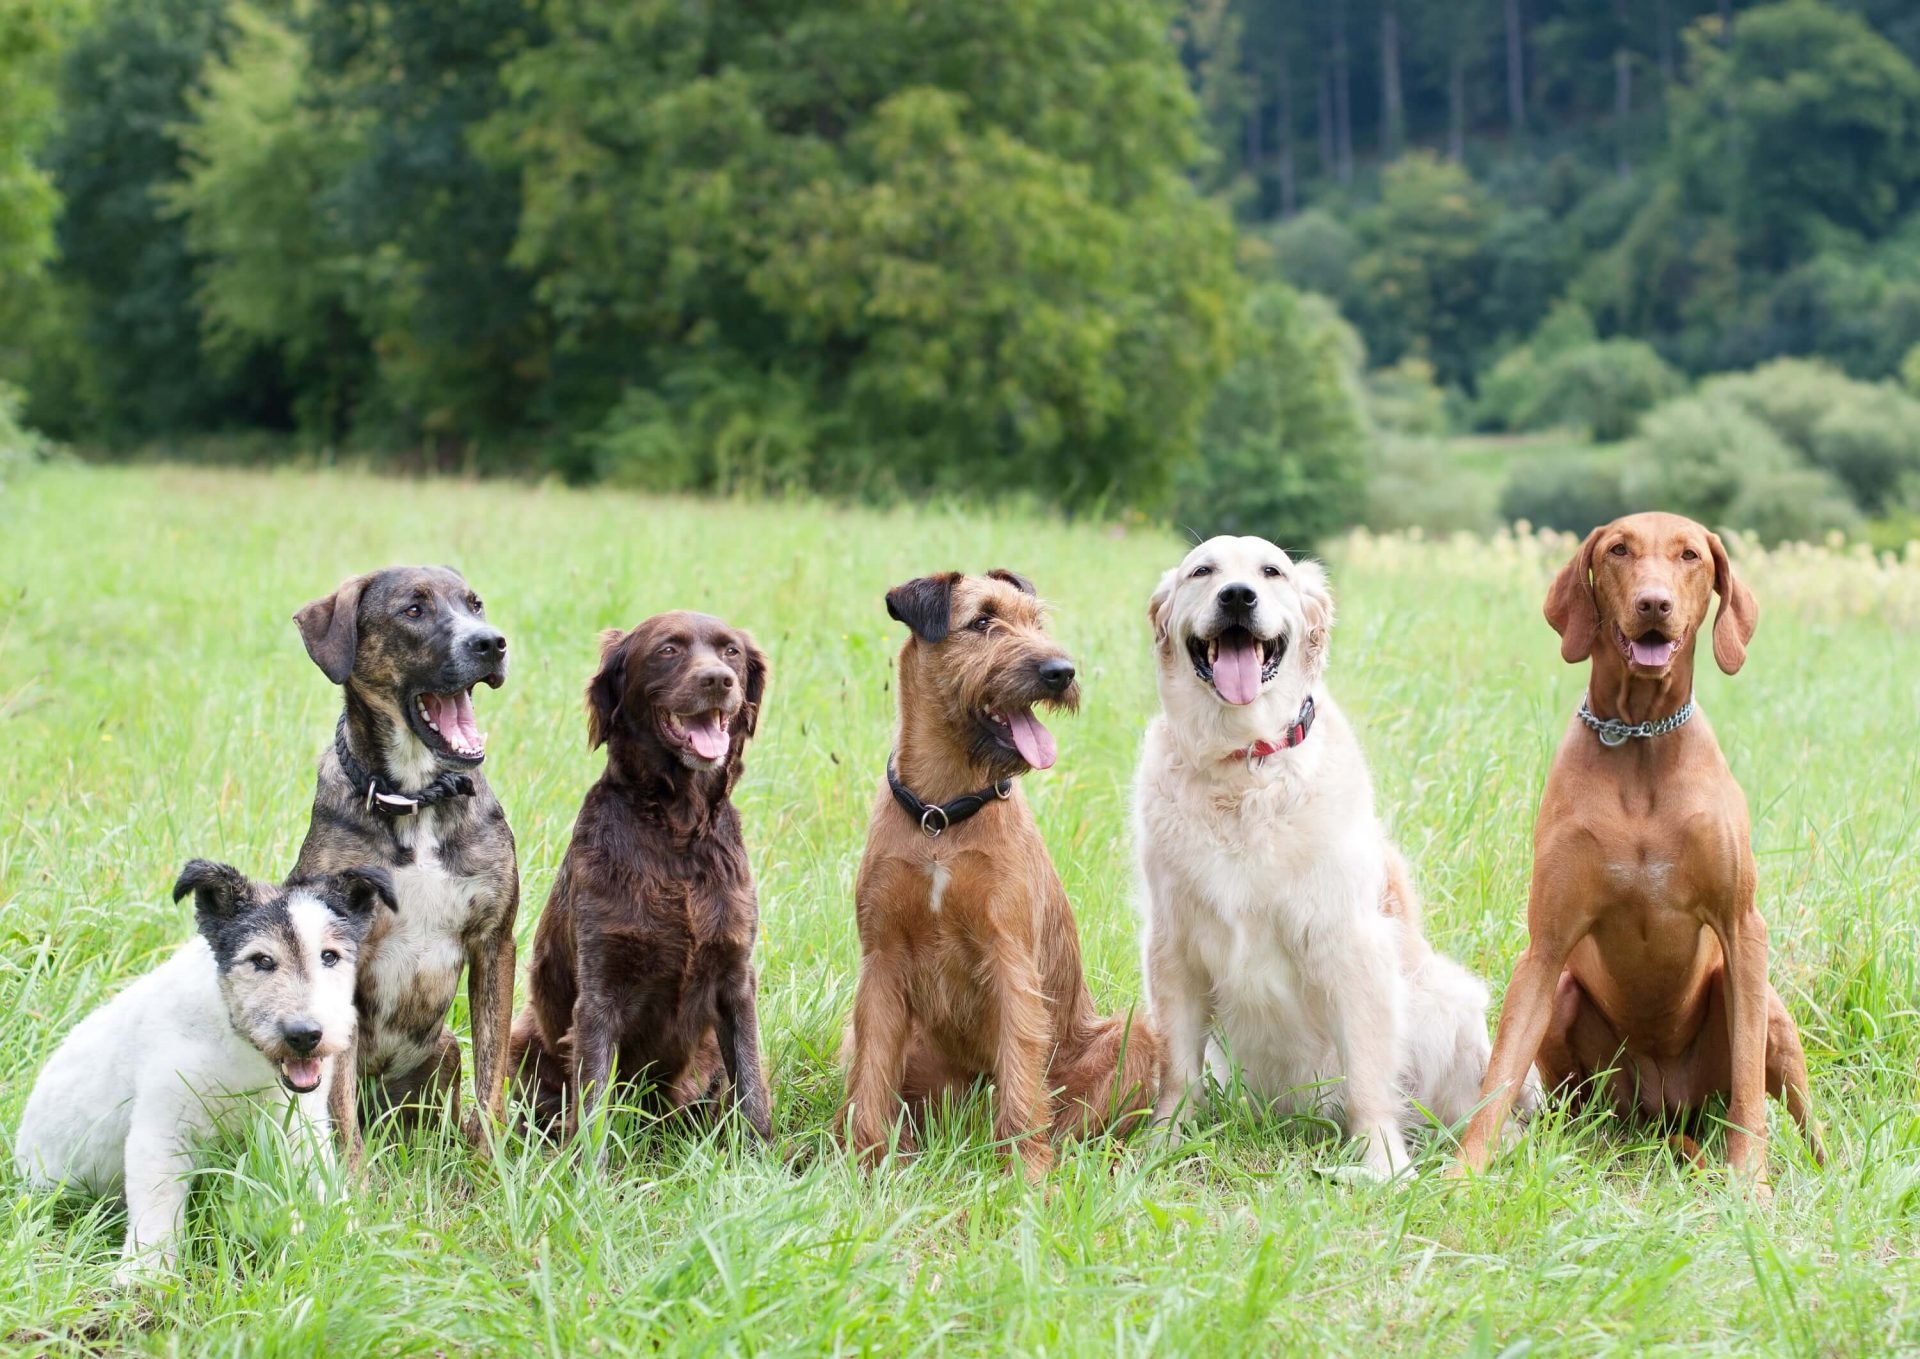 Animal Planet Hunde 6 verschiedene Hunde Rassen zur Auswahl 